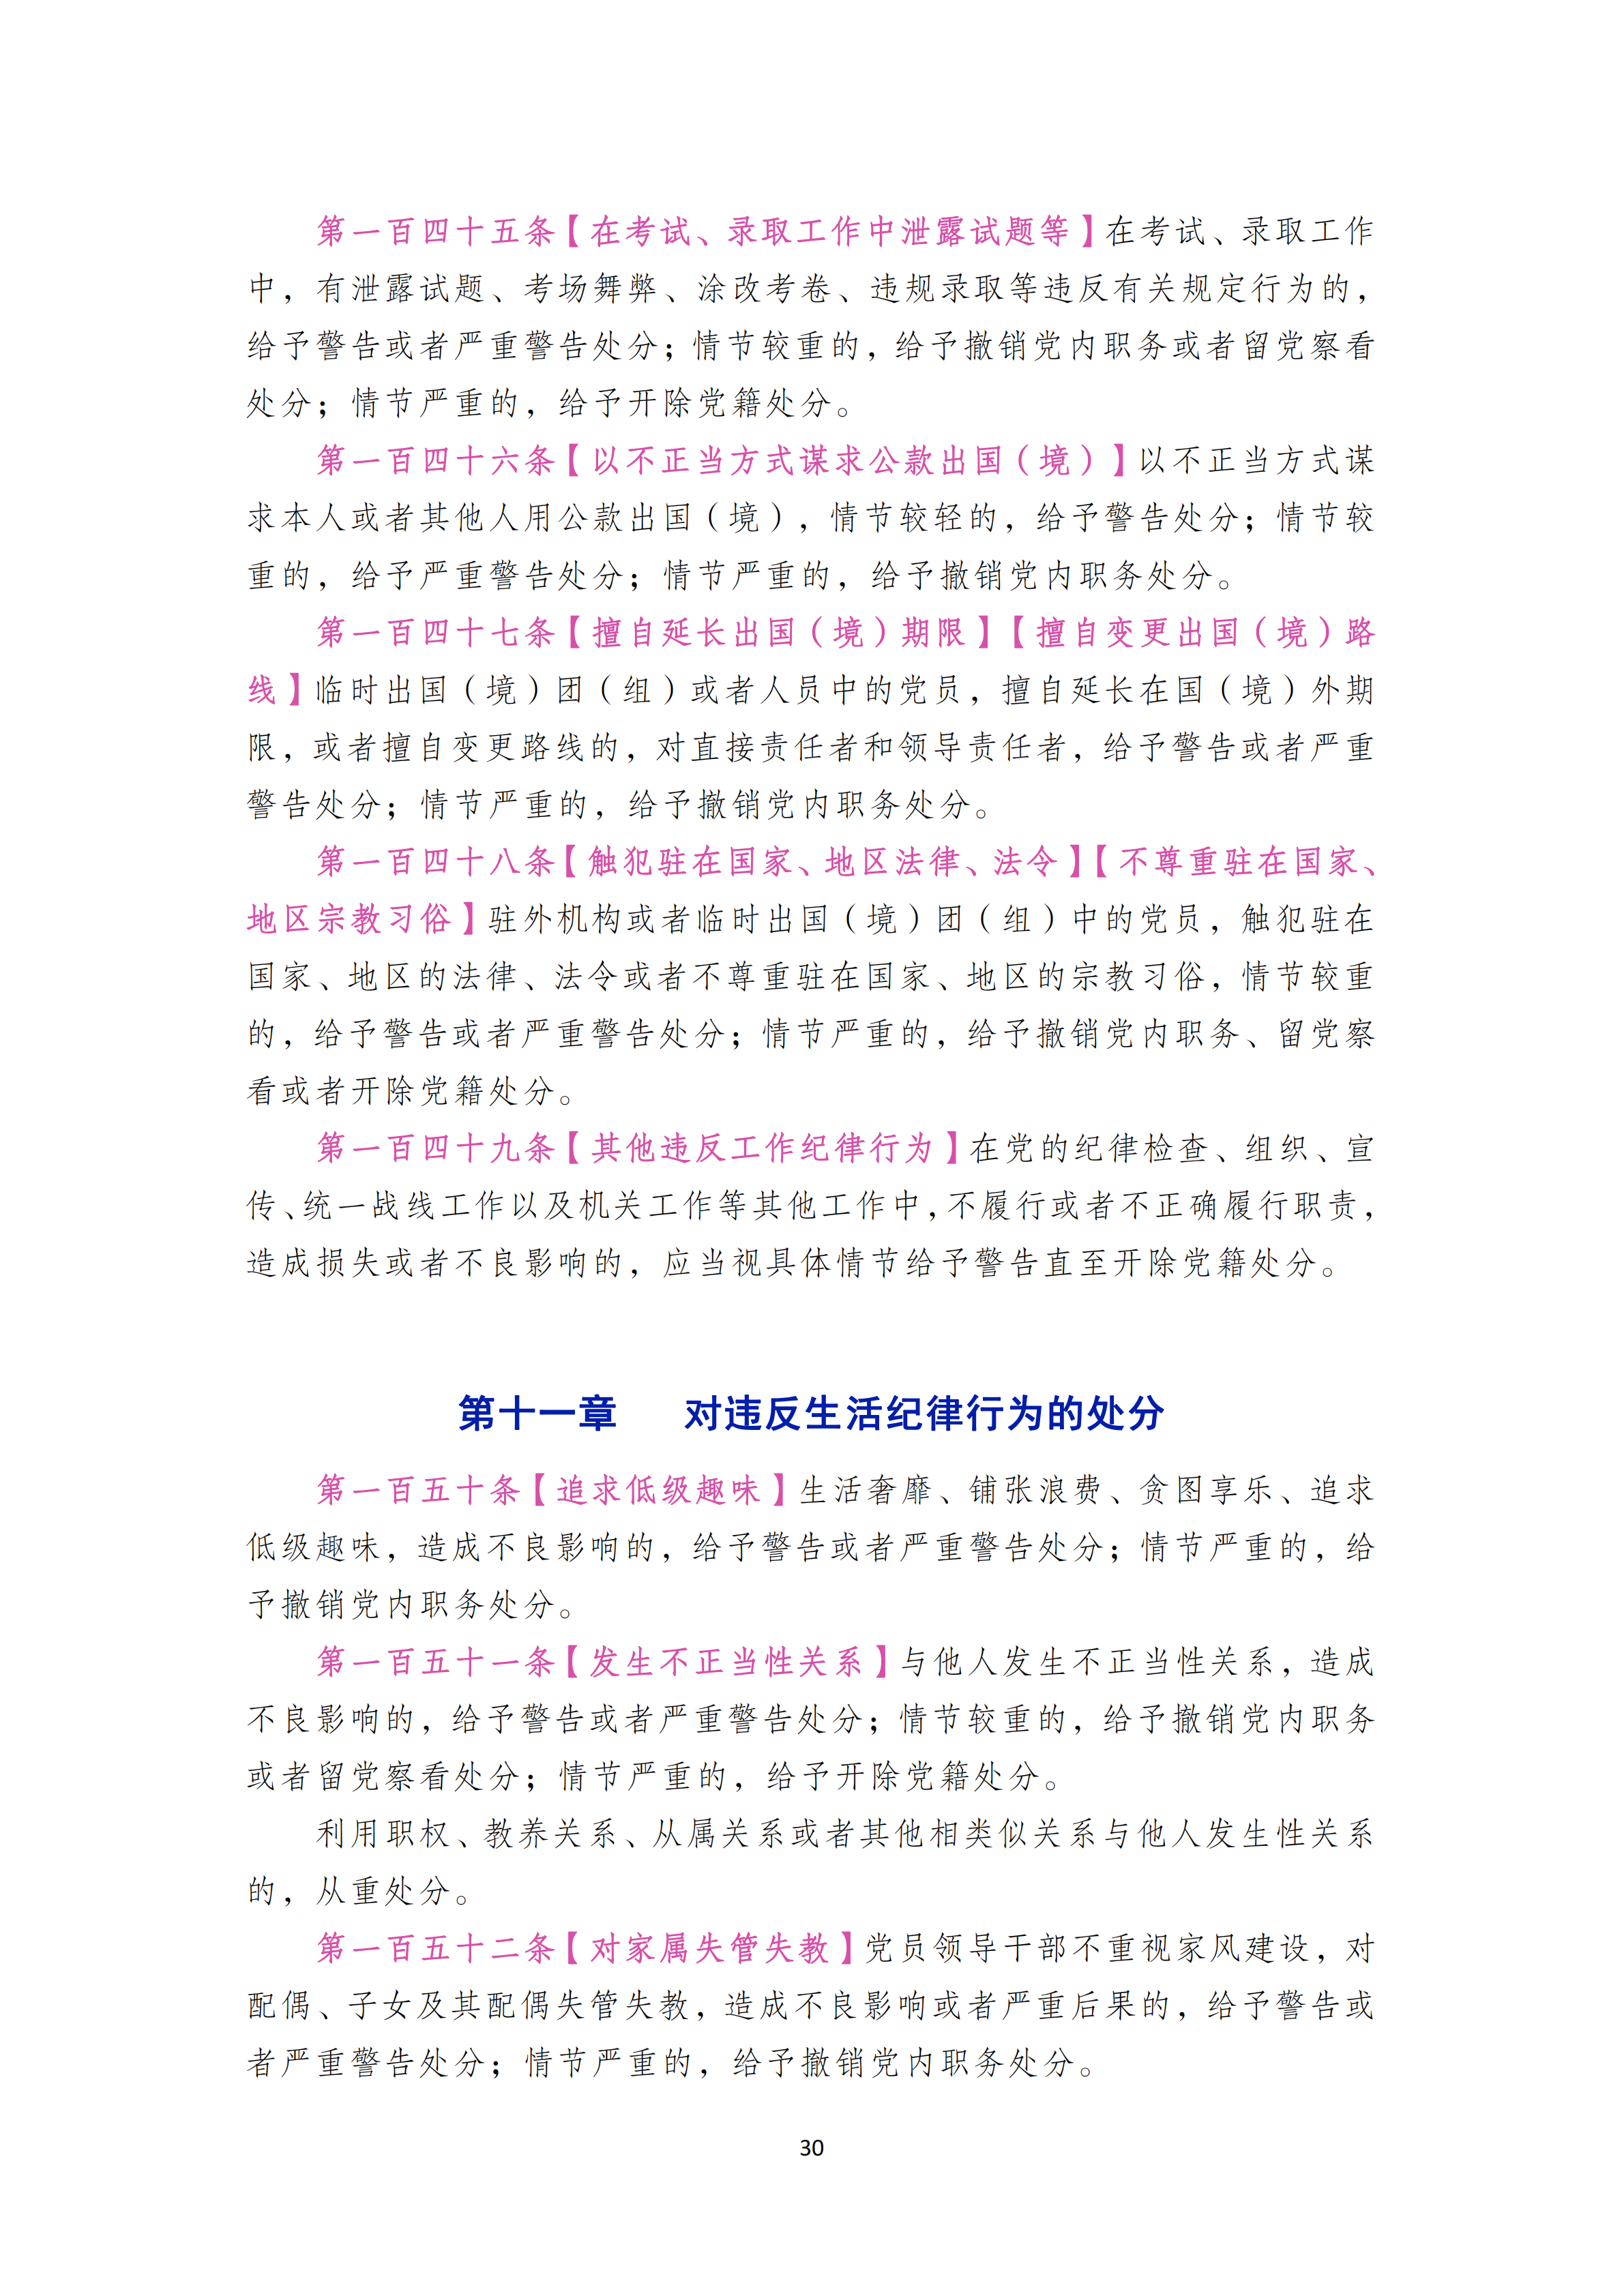 中国共产党纪律处分条例_29.png